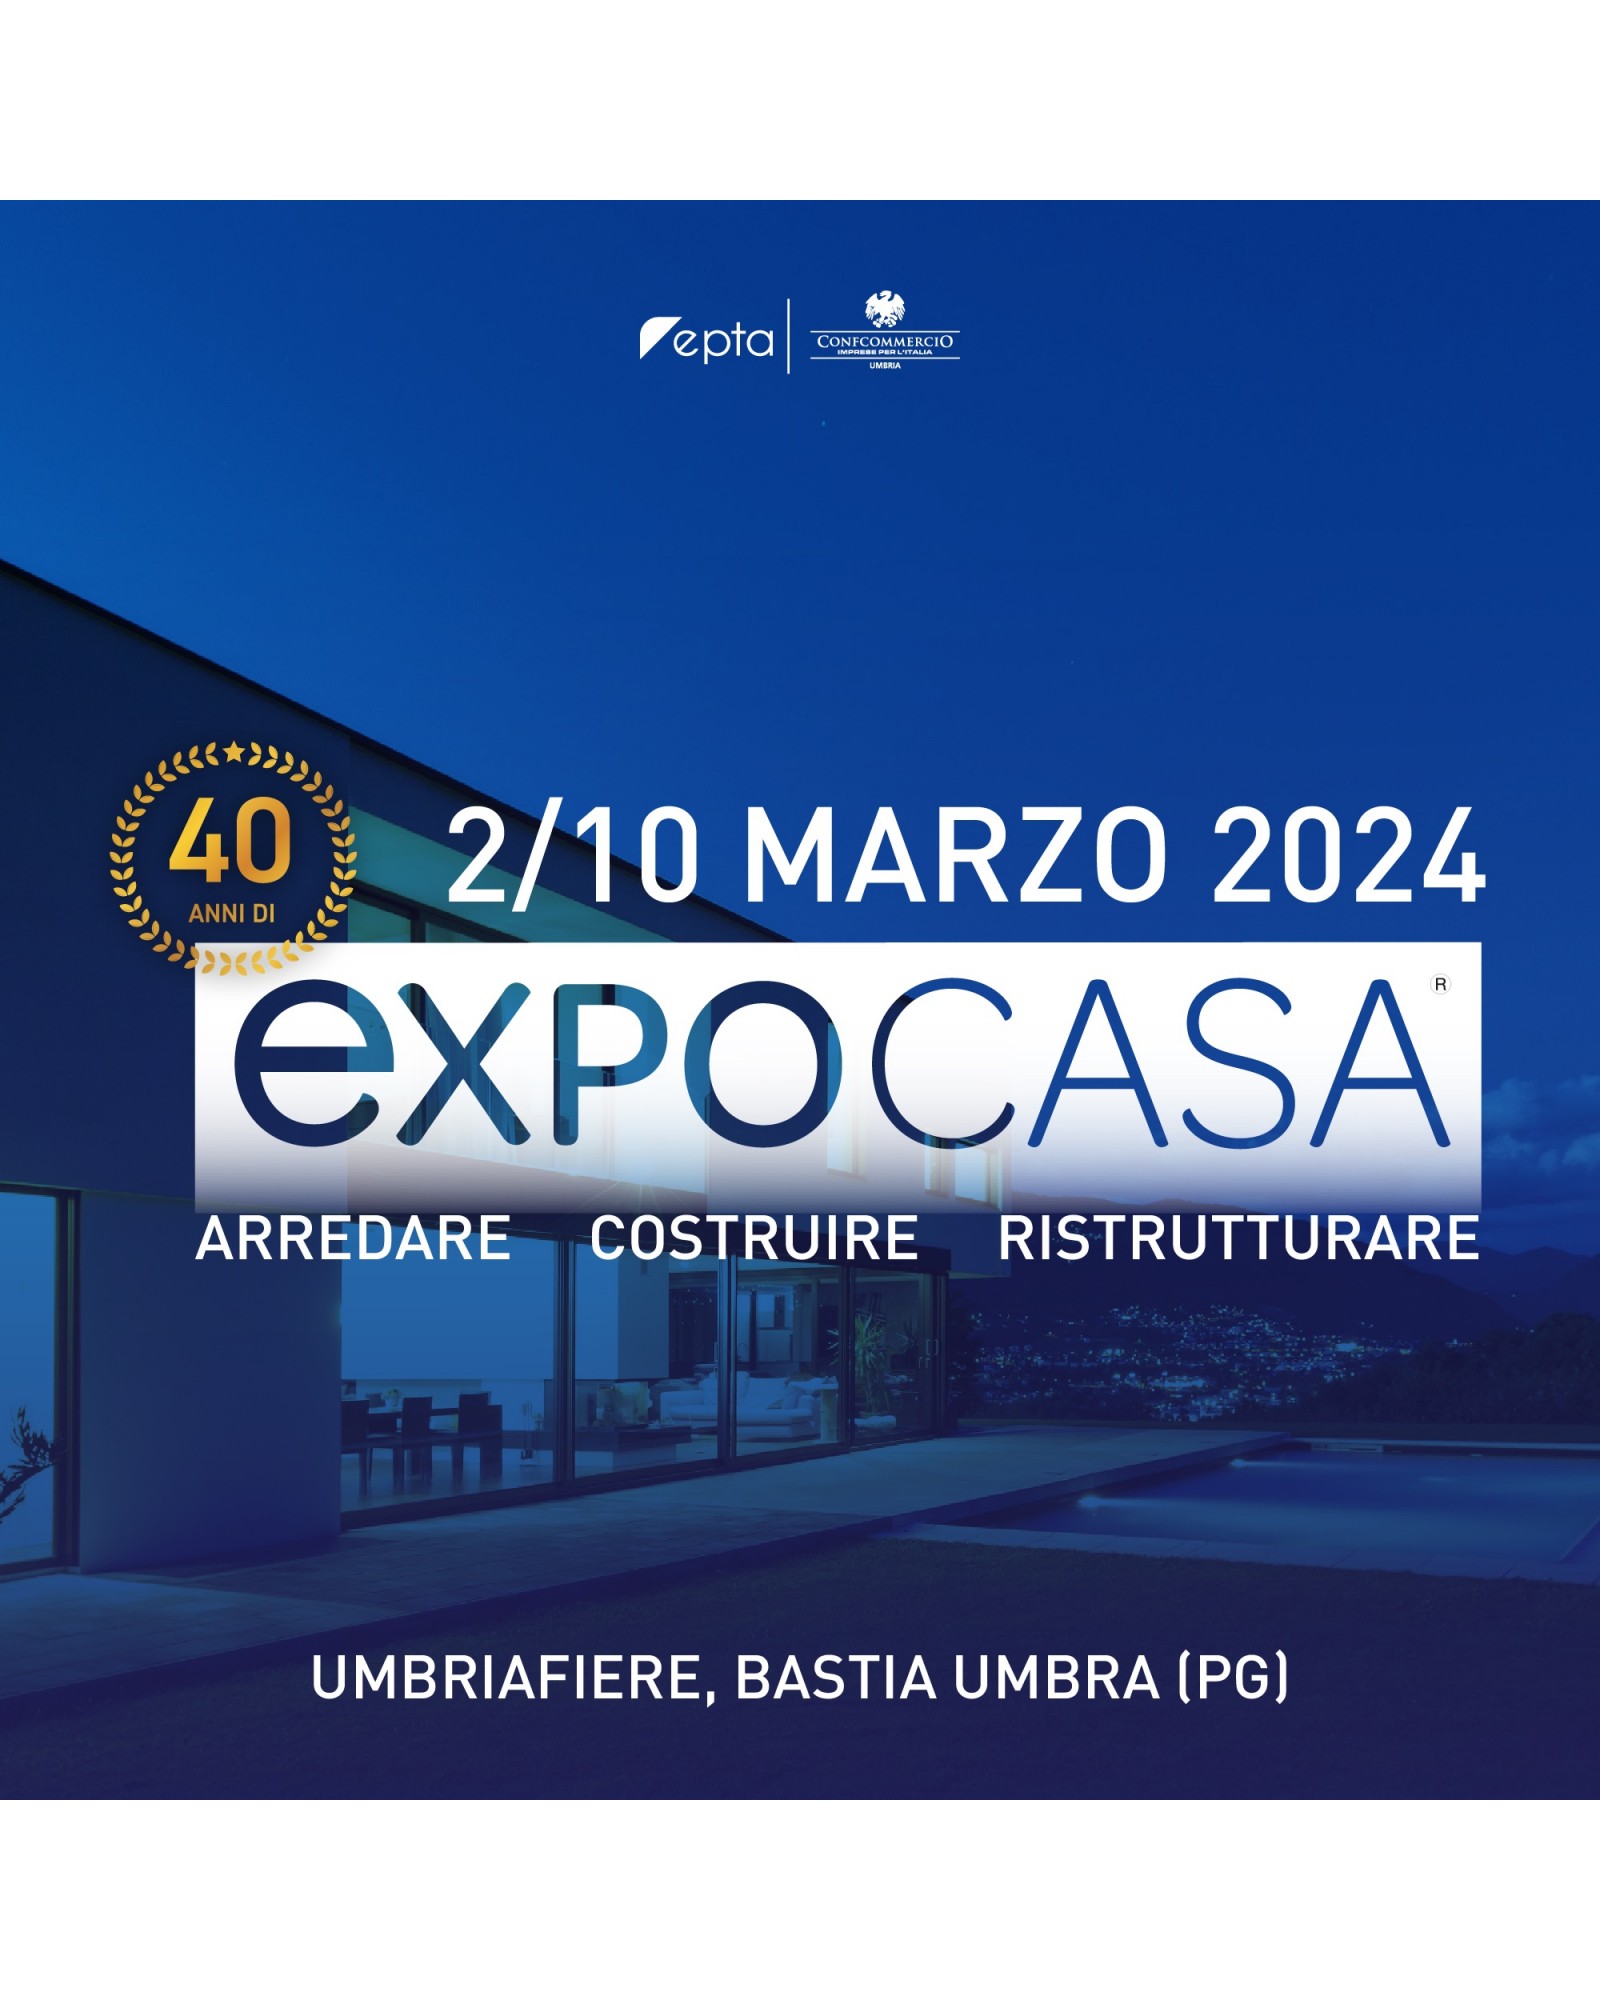 EXPO CASA 2024